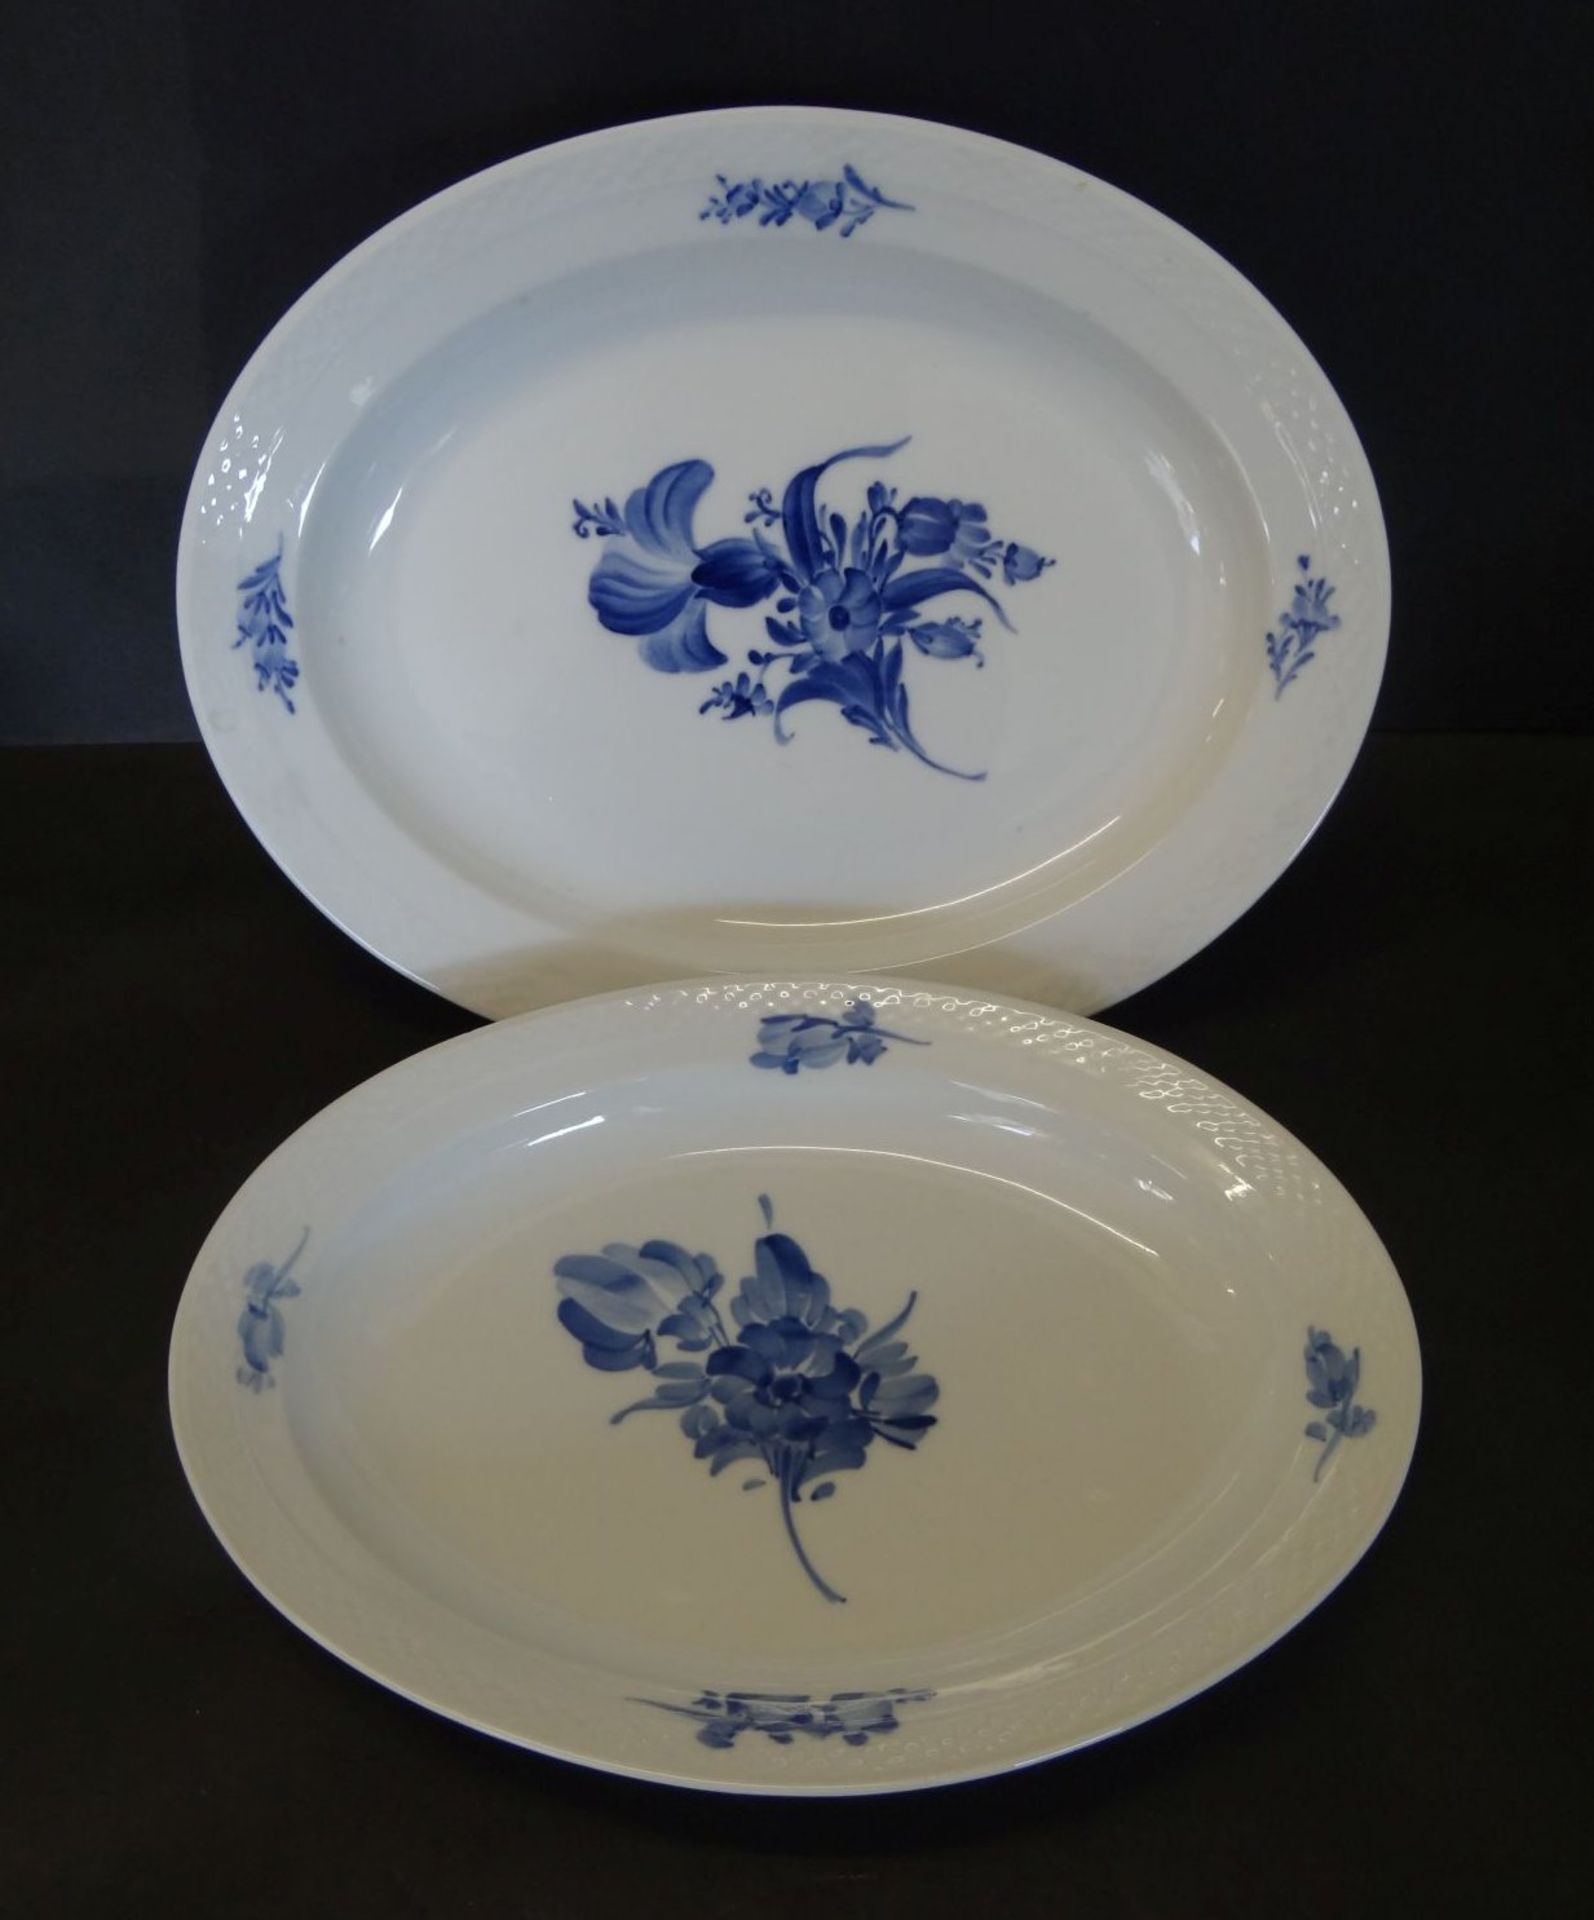 2x ovale Platten "Royal Copenhagen" blaue Blumen, 38x30 und 33x25 cm